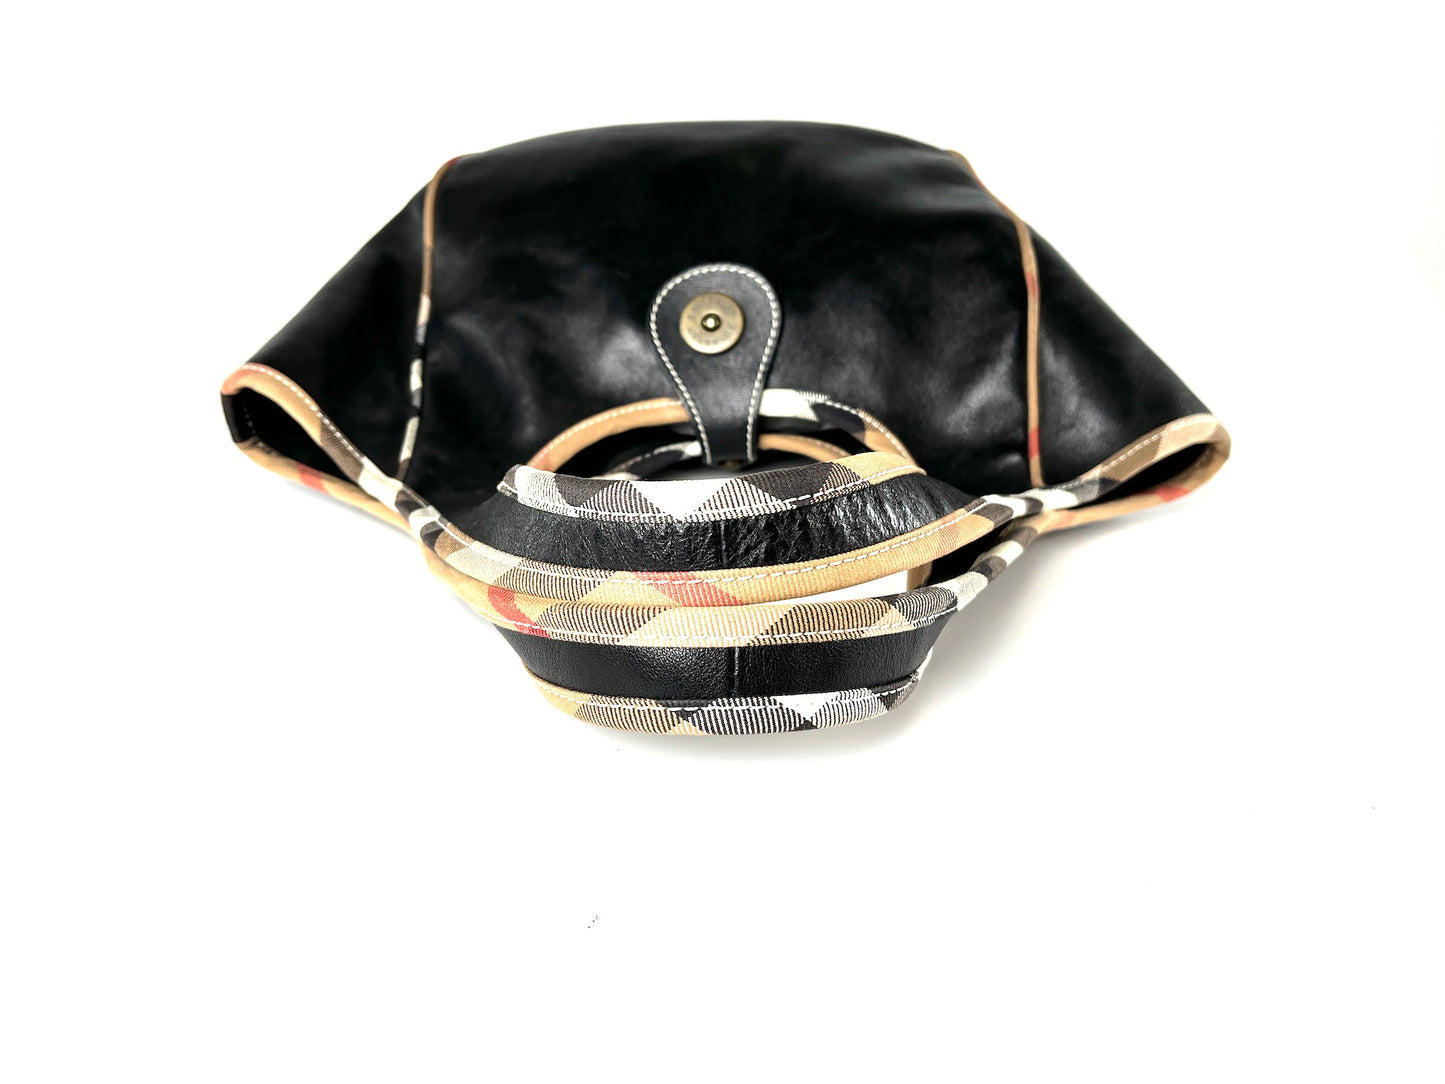 Burberry Black Leather Nova Check Trim Hobo Bag